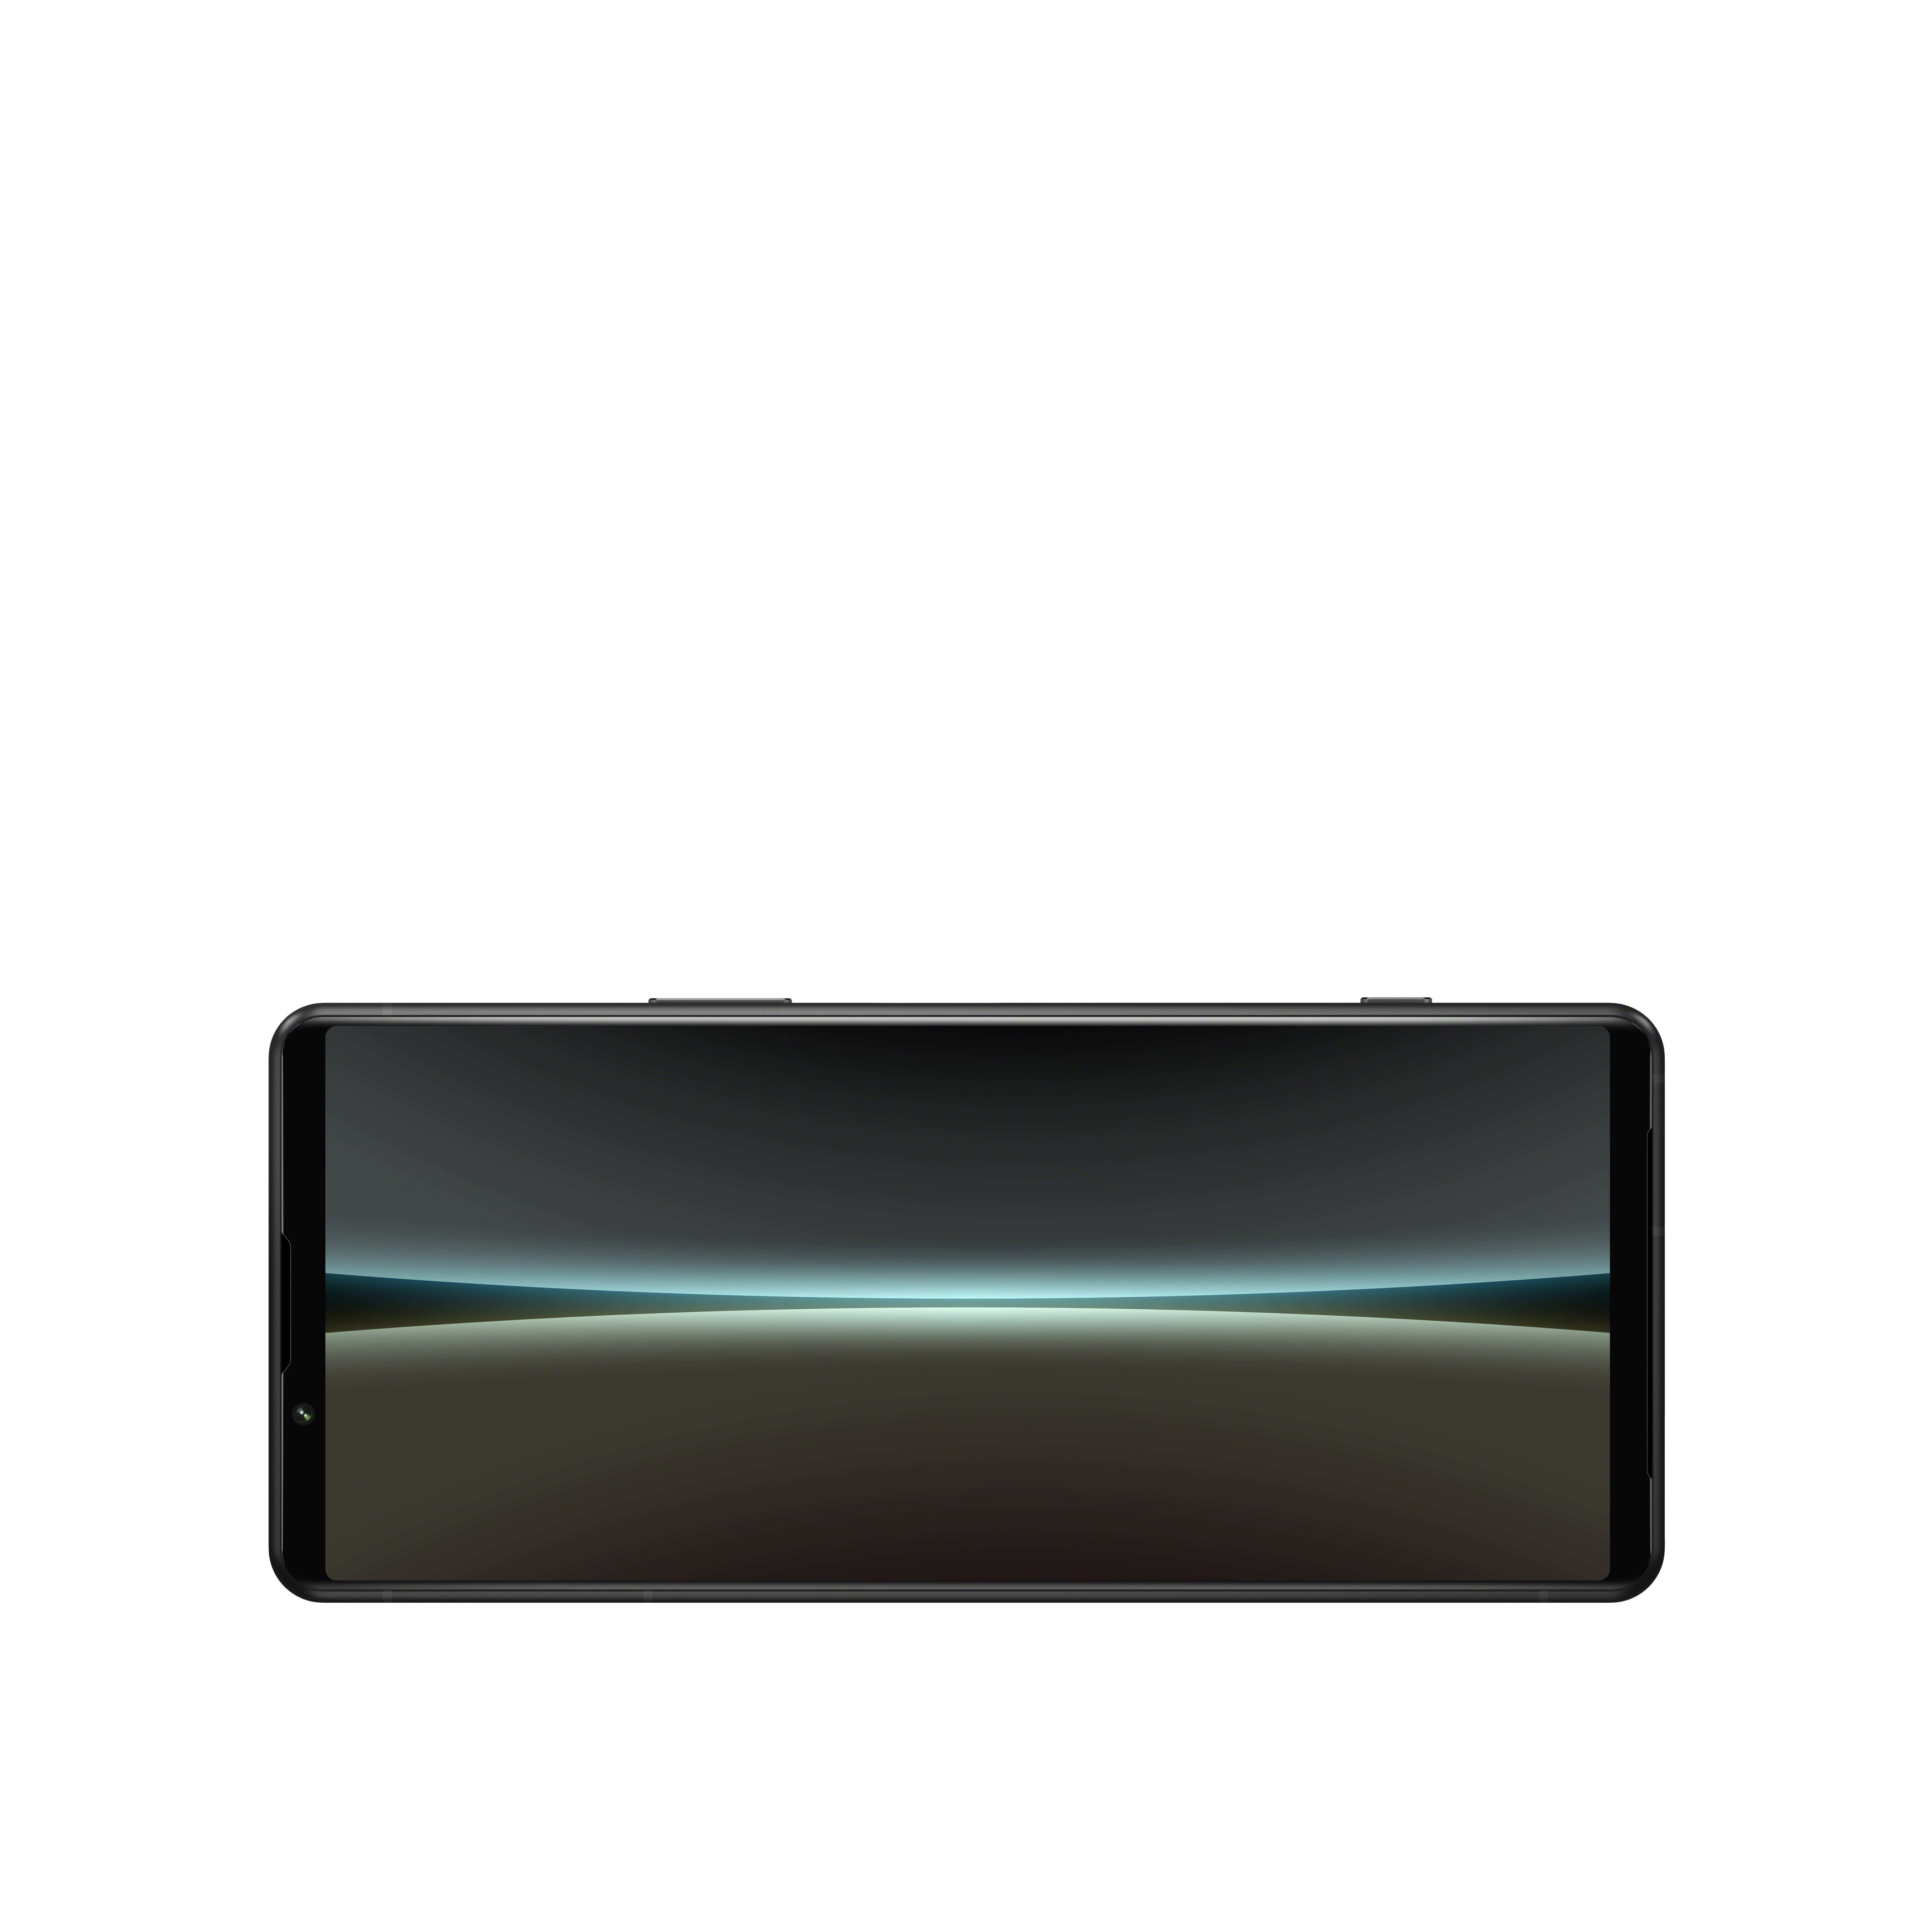 Black GB 128 Dual SONY IV 5 SIM Xperia